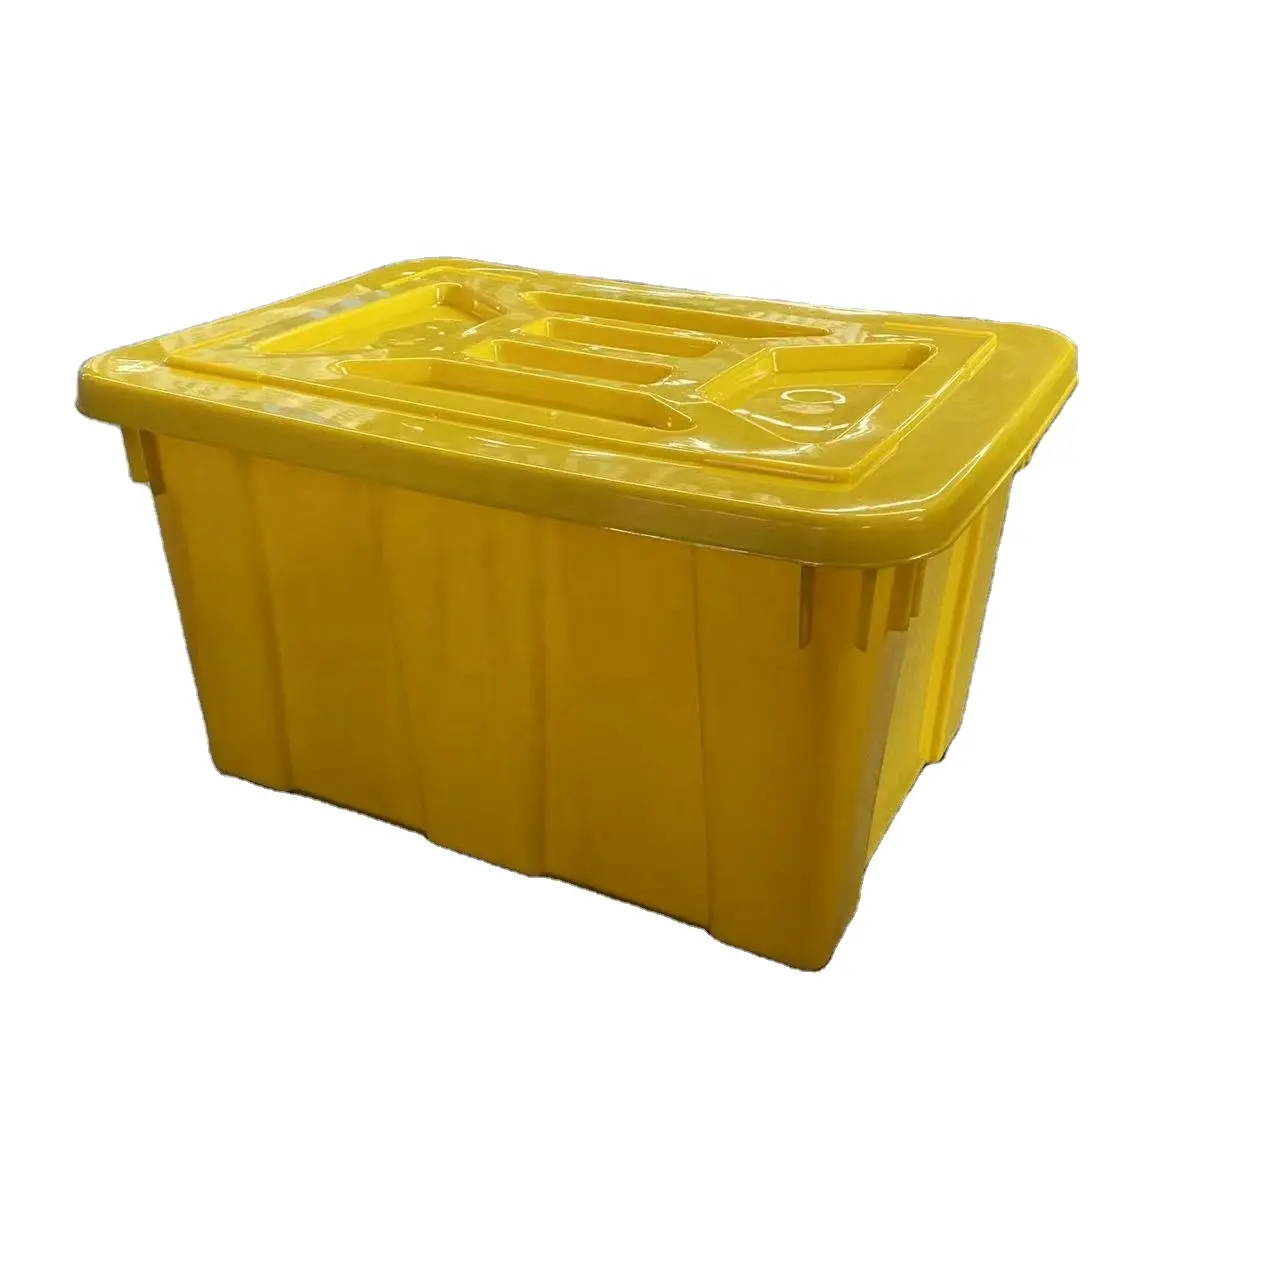 Schwerlast-Karton 67 × 49 × 38 cm medizinischer Plastik-Stapelförderung mit Deckel für sichere und sichere Verpackung